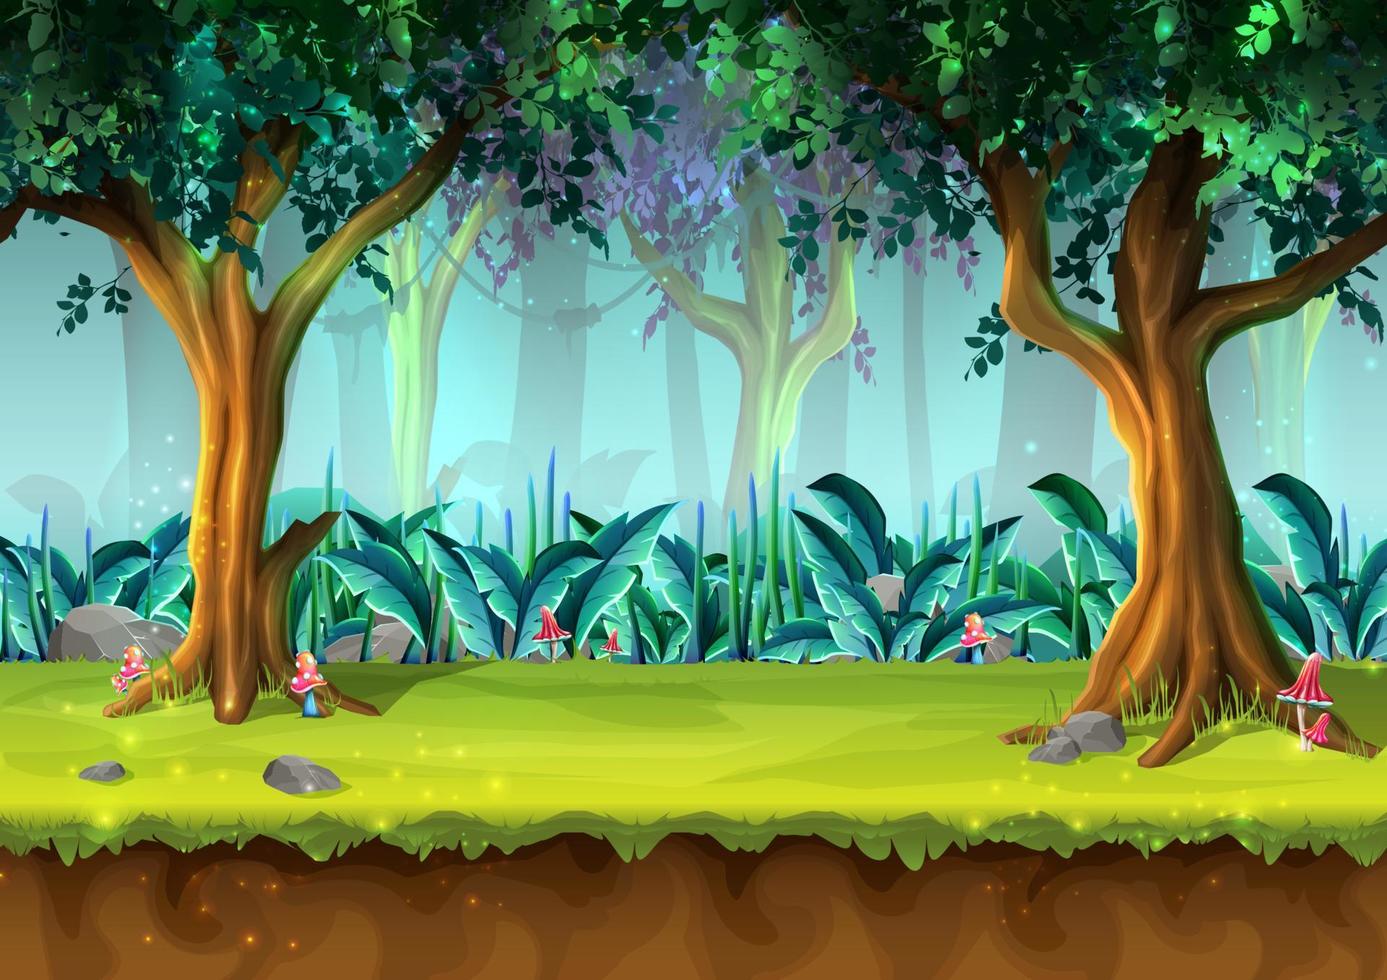 bosque lluvioso misterioso estilo caricatura vectorial con árboles y hongos, ilustración para el diseño de juegos, aplicaciones, sitios web. vector